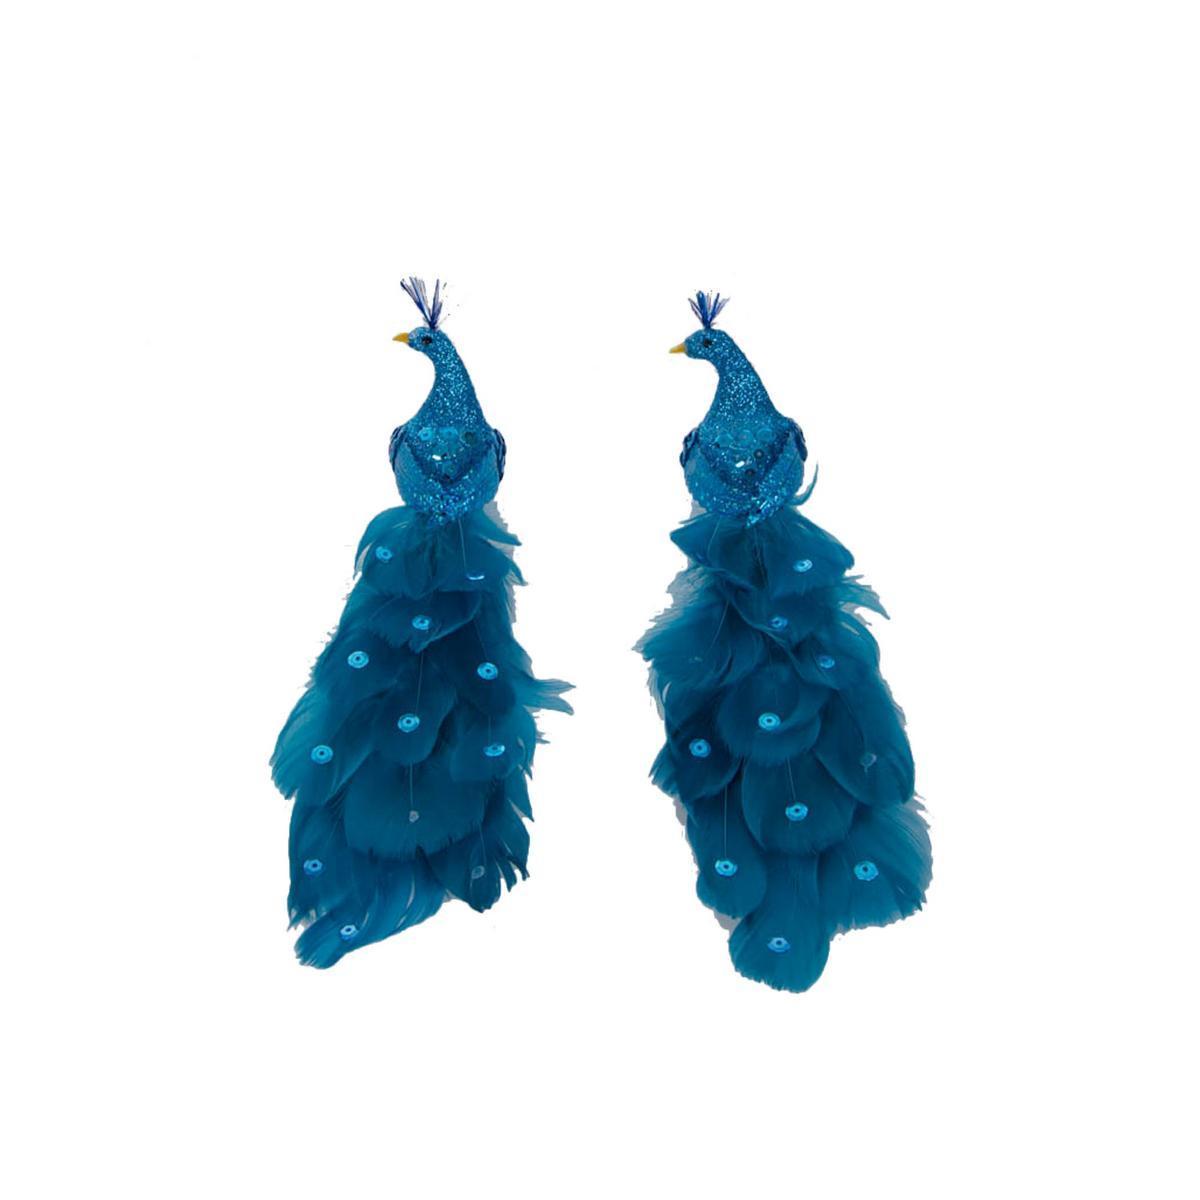 Lot de 2 pinces paon - Polystyrène et plumes - 22 cm - Bleu